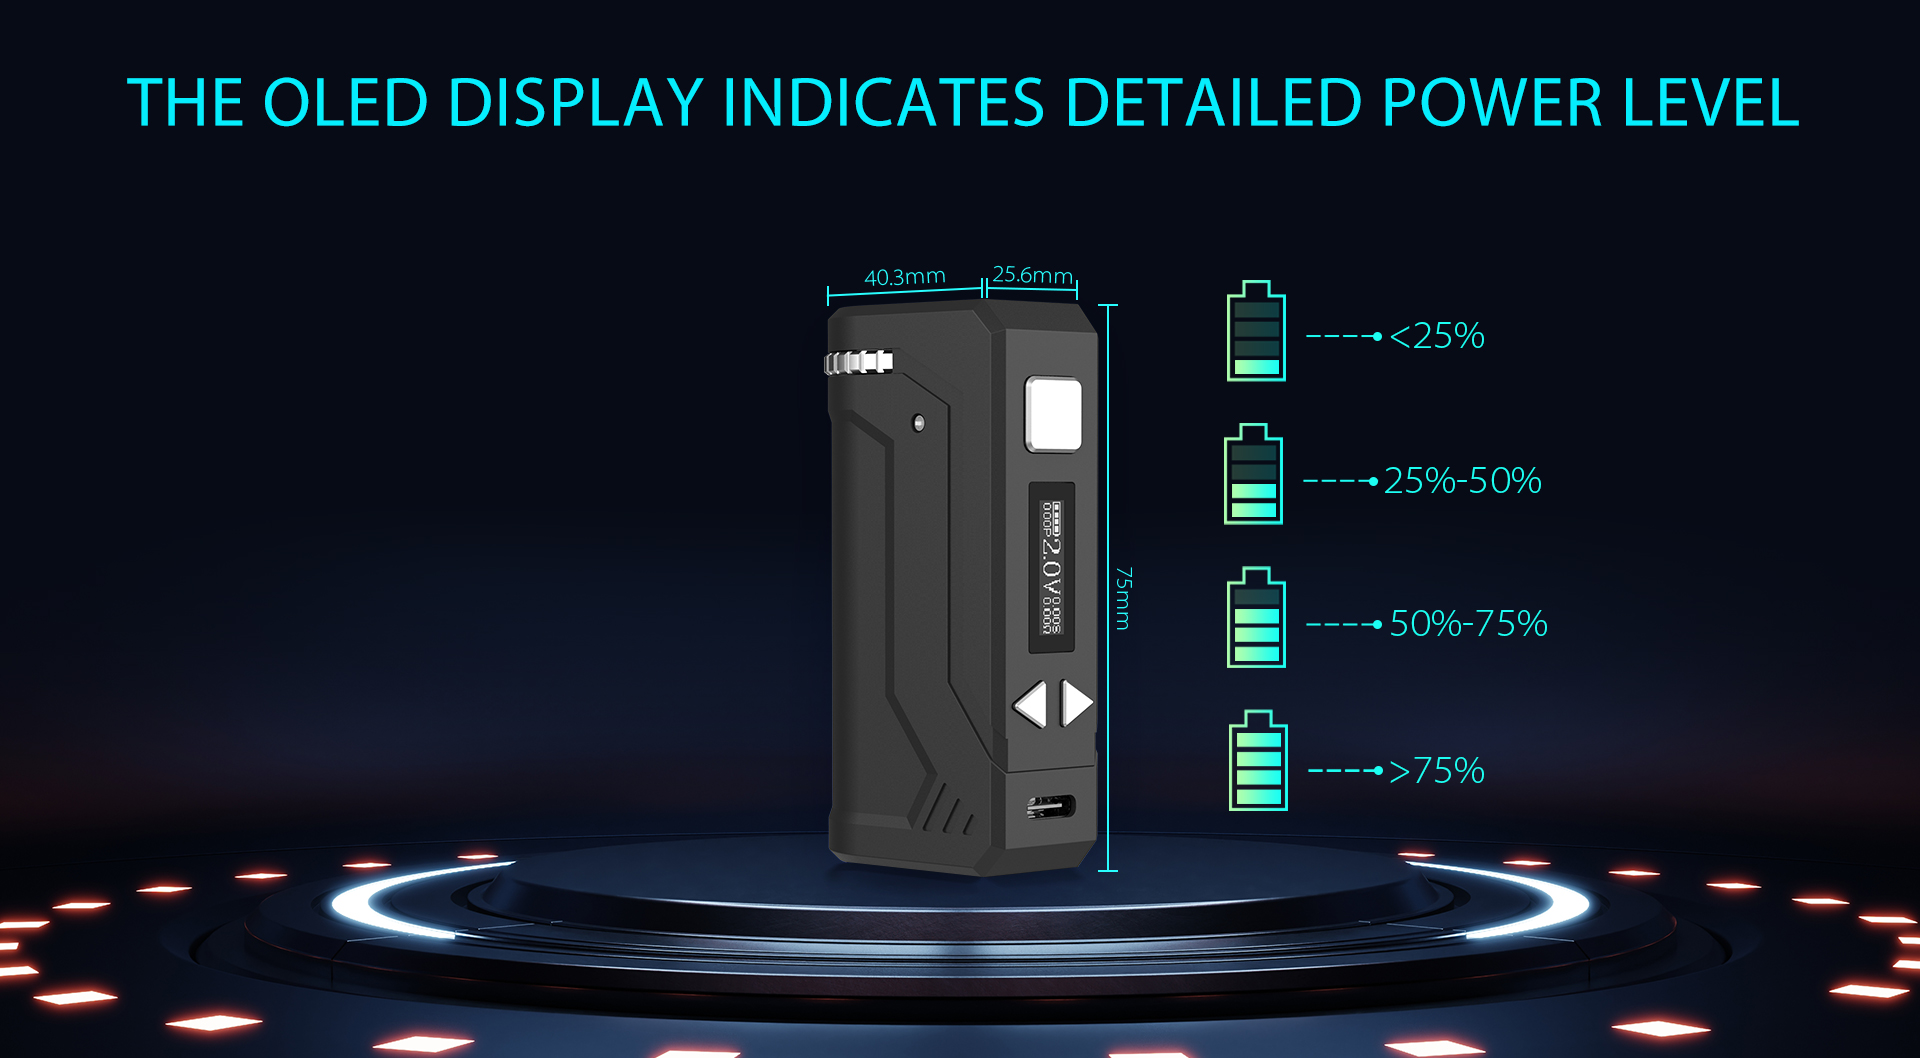 Yocan UNI Pro Plus OLED display indicates detailed power level.